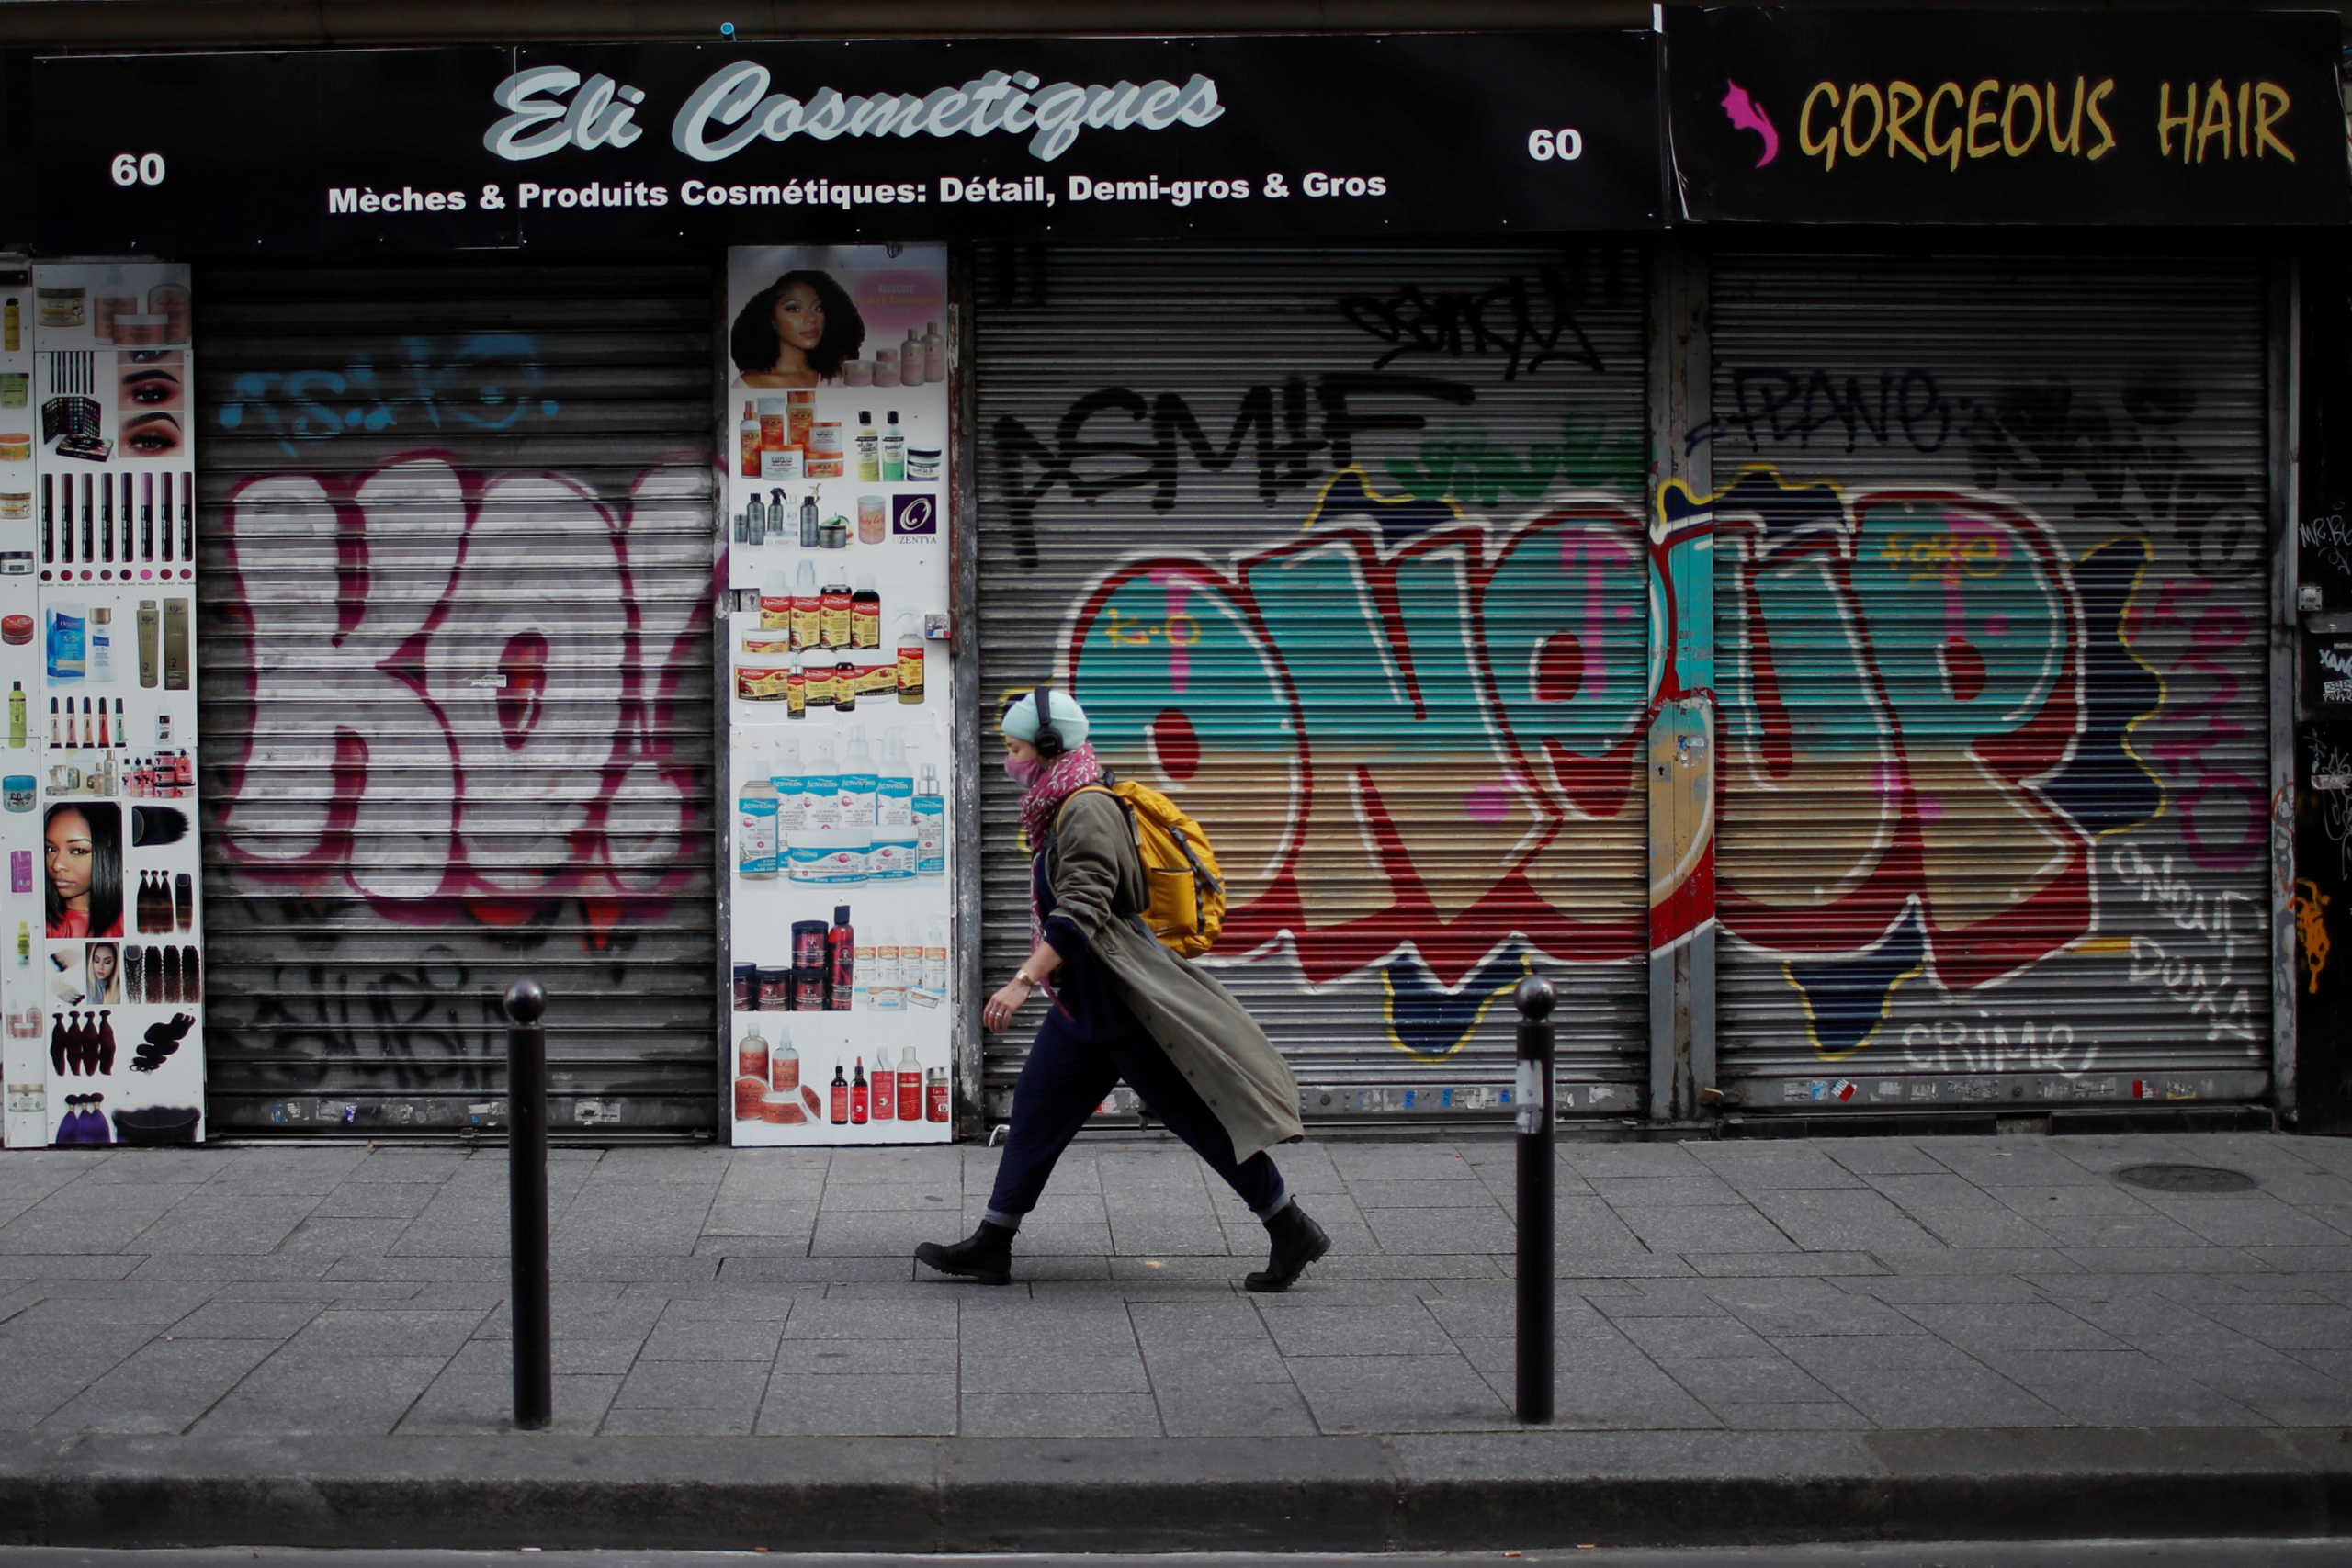 Γαλλία: Σκέψεις για αναβολή της Black Friday λόγω κορονοϊού